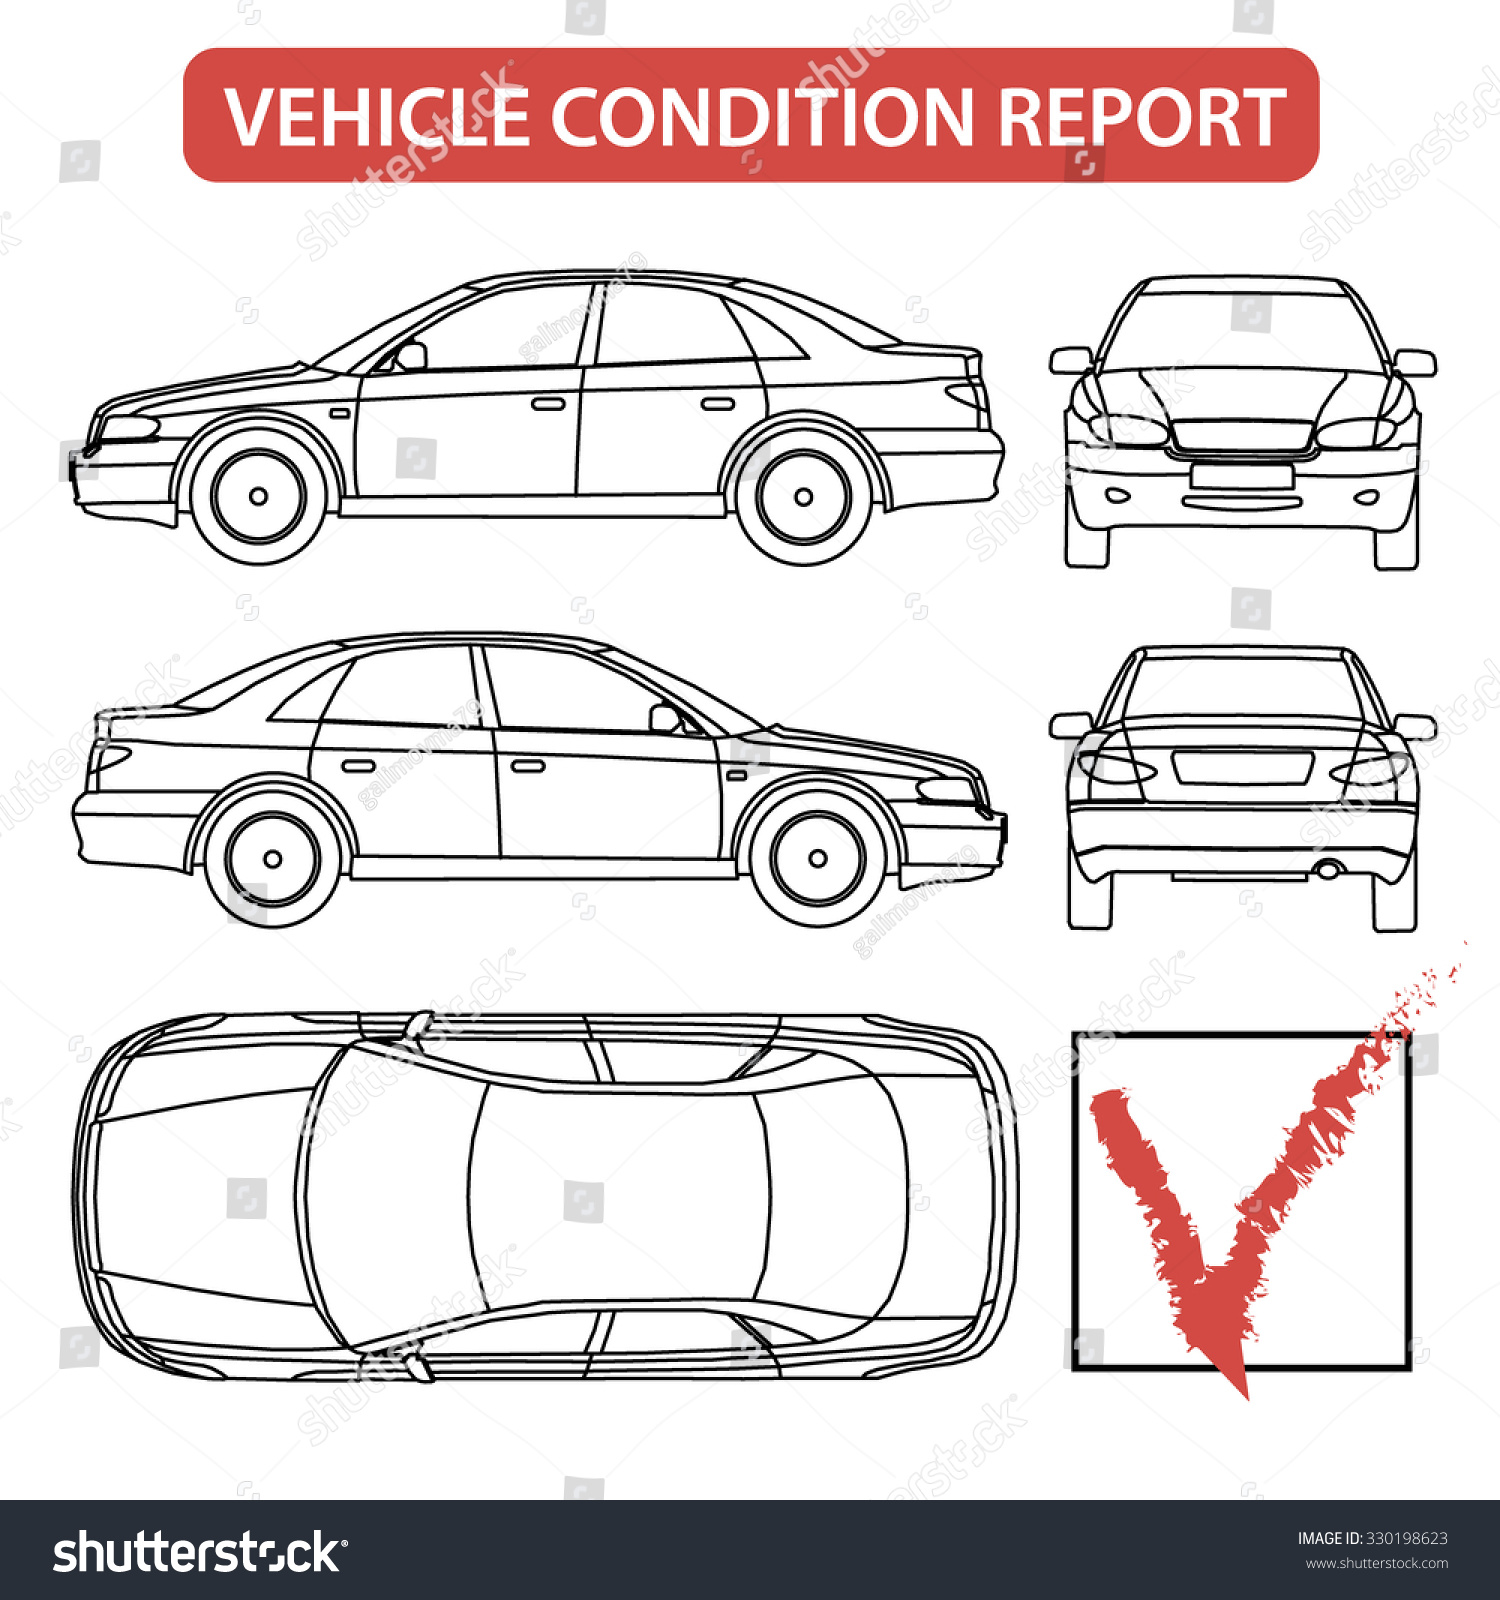 Formular für den Zustand des Fahrzeugs: Stock-Vektorgrafik Within Truck Condition Report Template